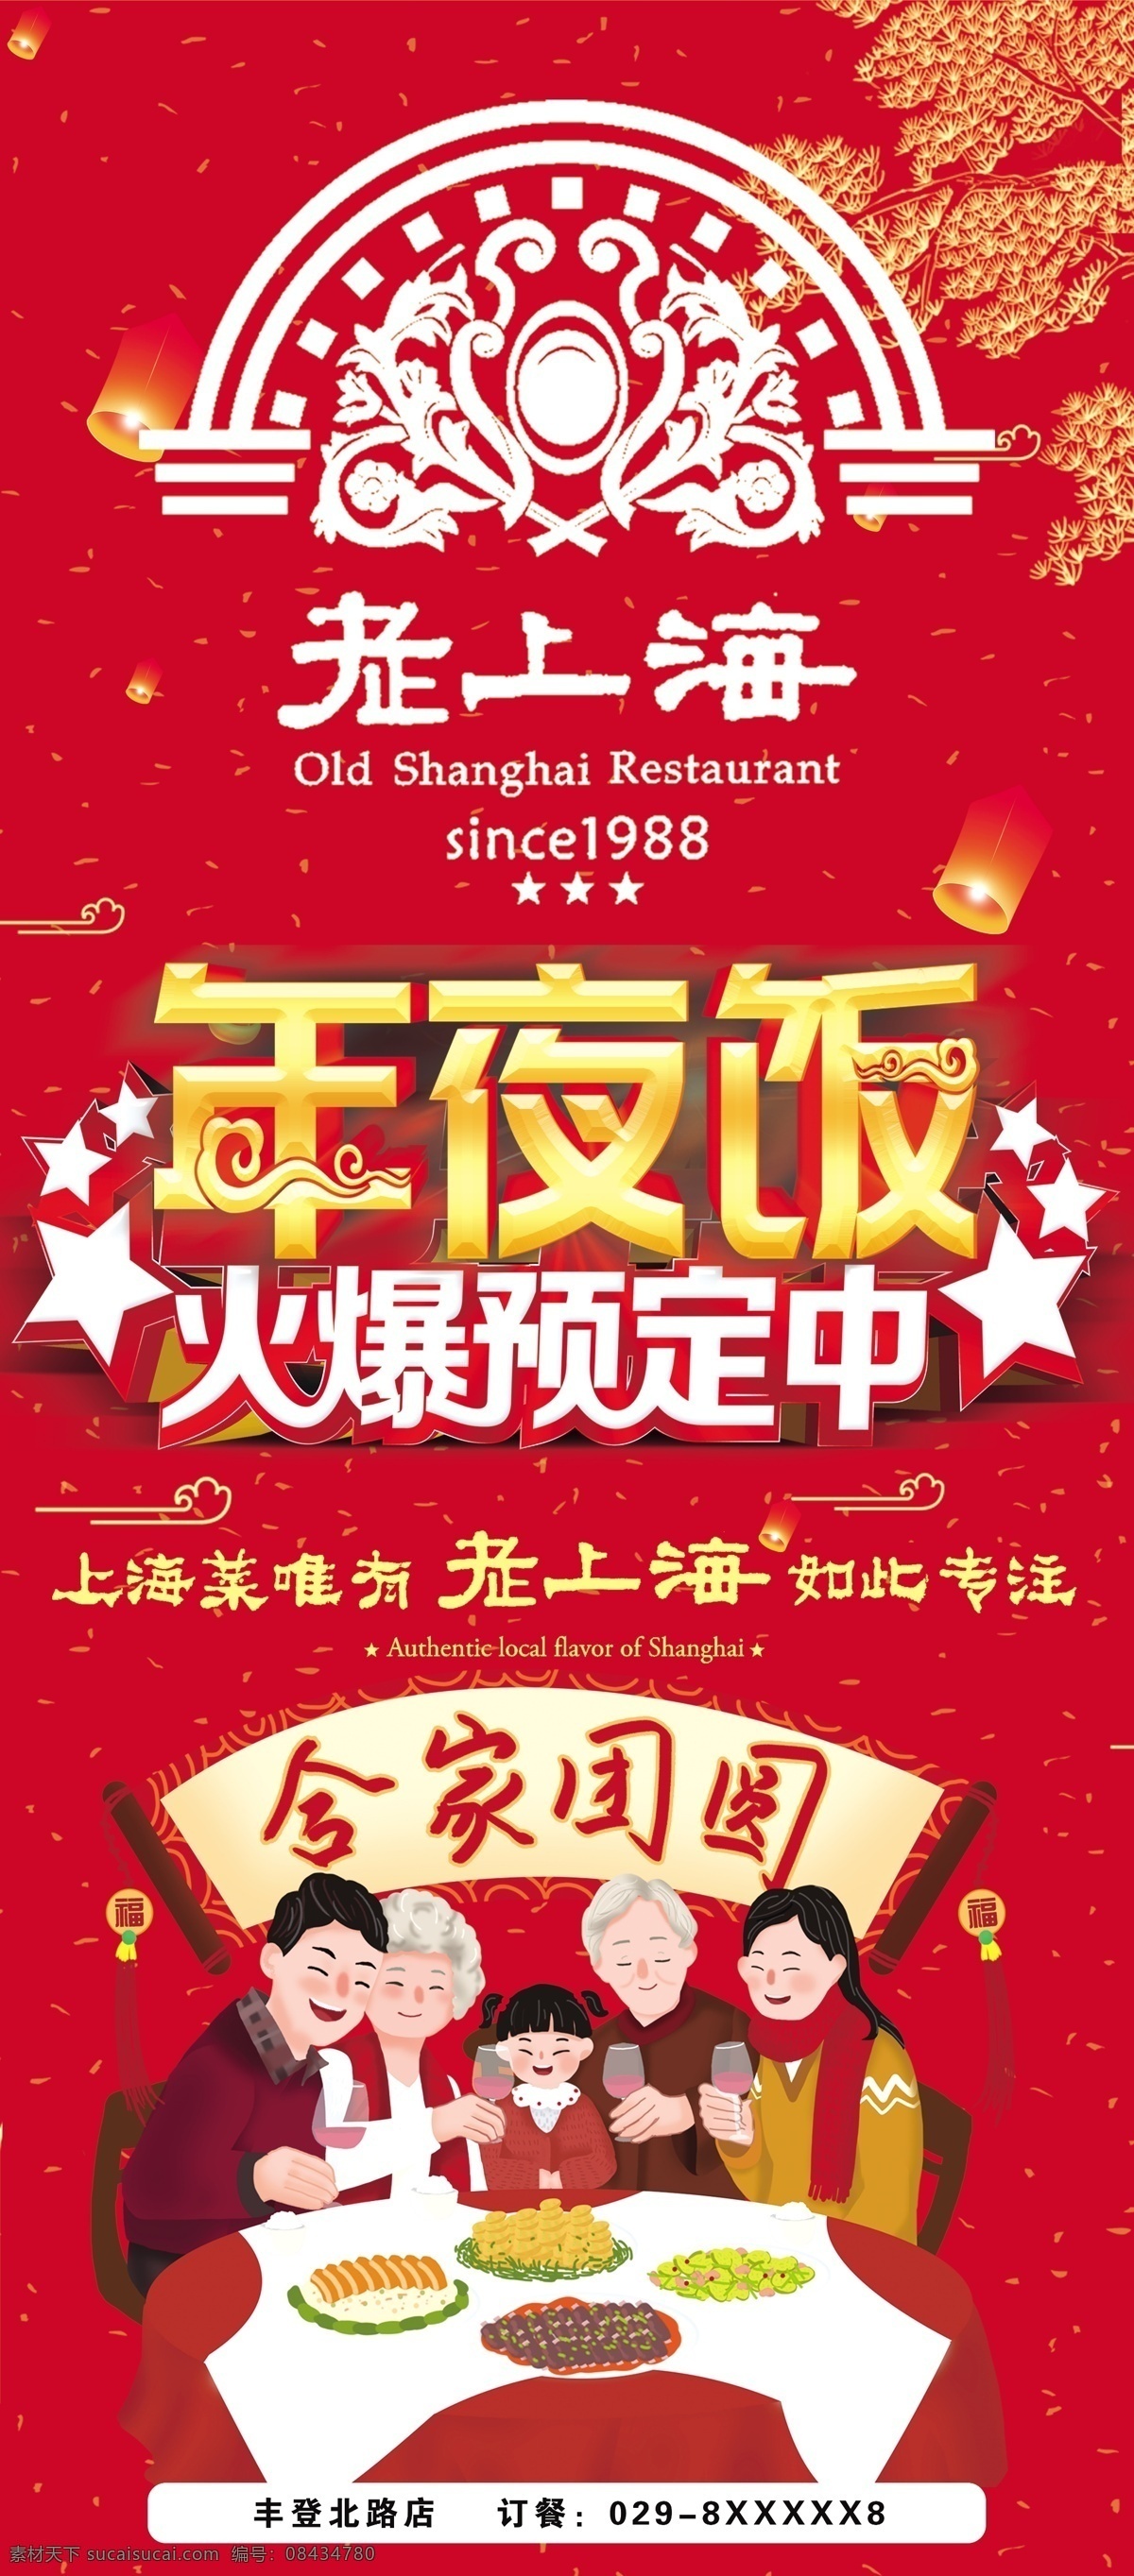 老 上海 年夜饭 易拉宝 老上海年夜饭 展架 年夜饭易拉宝 年夜饭预定中 易拉宝类 展板模板